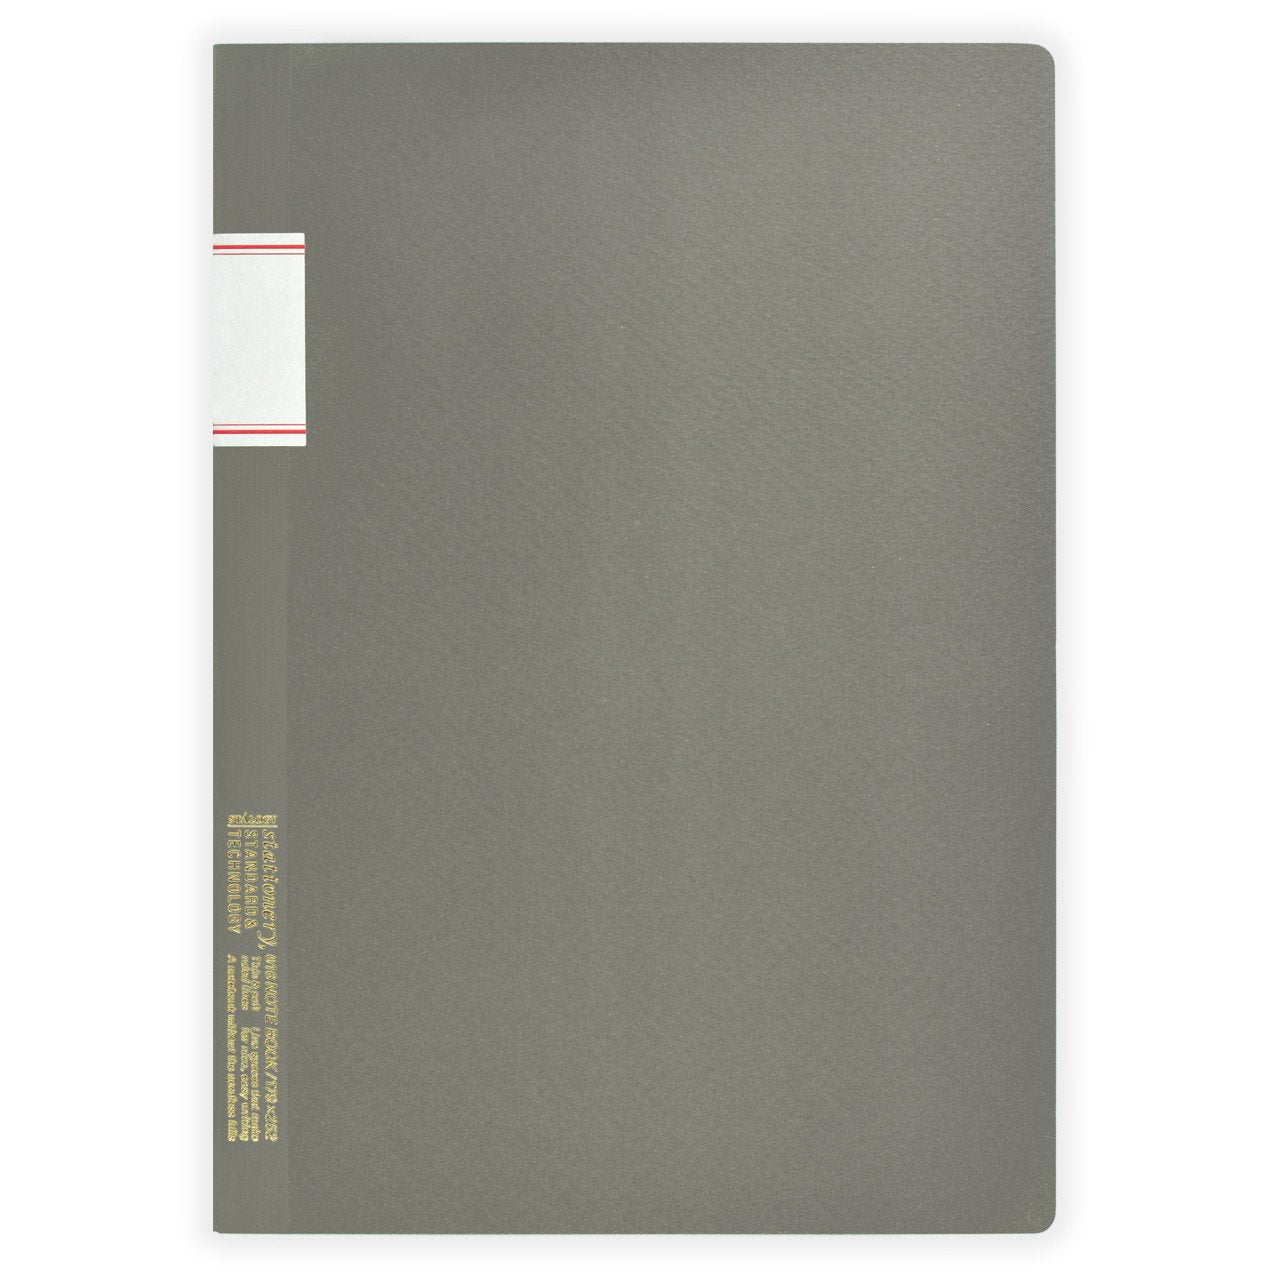 Stalogy Stalogy 7 x 10" Lined Notebook Grey 